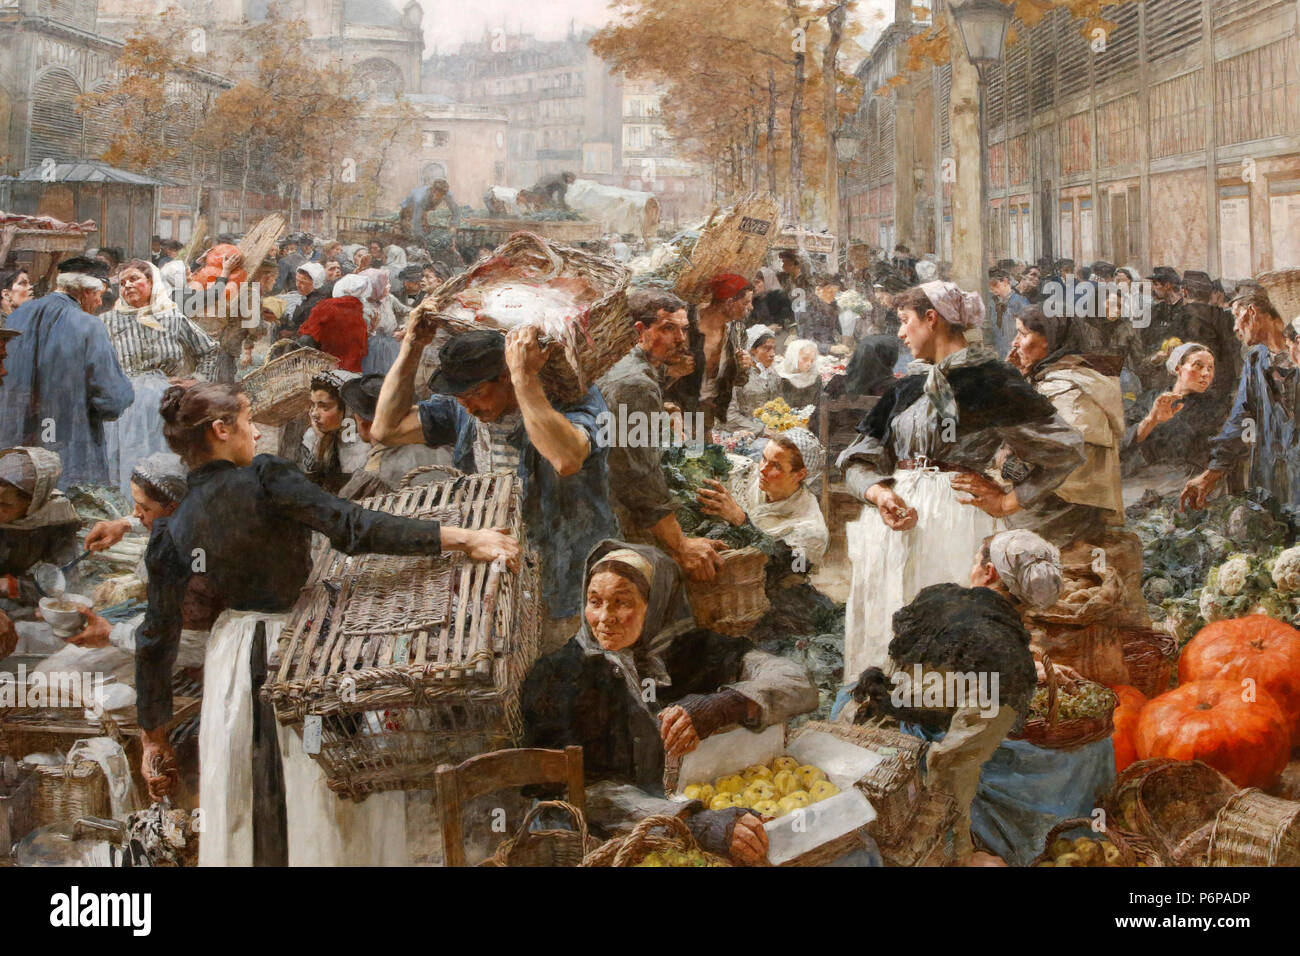 Petit Palais museum, Paris, France. Leon Lhermite, Les Halles (the wholesale market), 1895, oil on canvas. Detail. Stock Photo